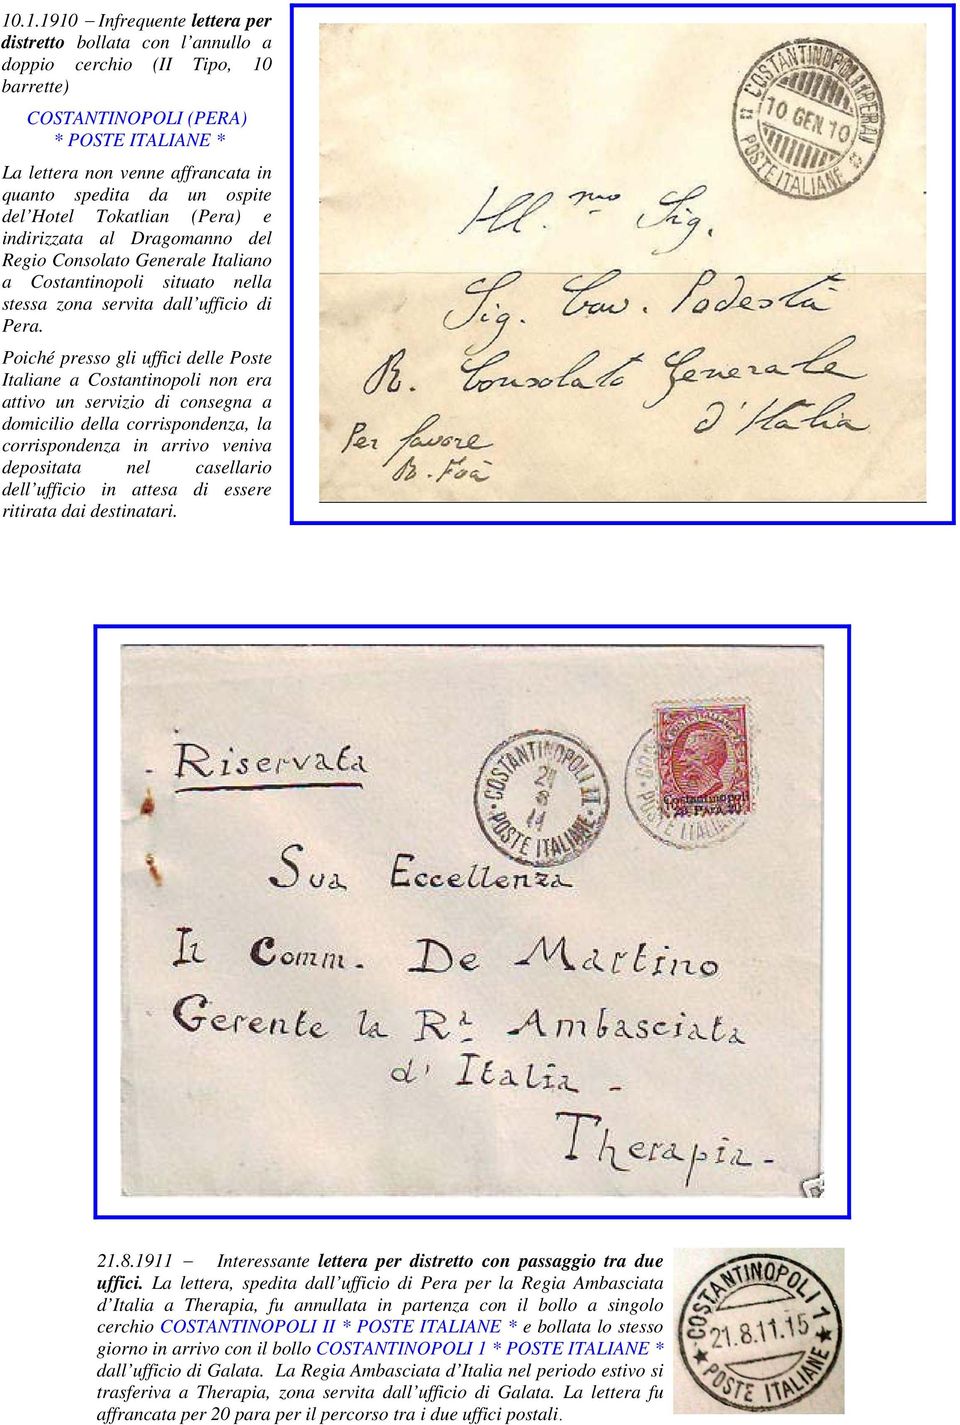 Poiché presso gli uffici delle Poste Italiane a Costantinopoli non era attivo un servizio di consegna a domicilio della corrispondenza, la corrispondenza in arrivo veniva depositata nel casellario